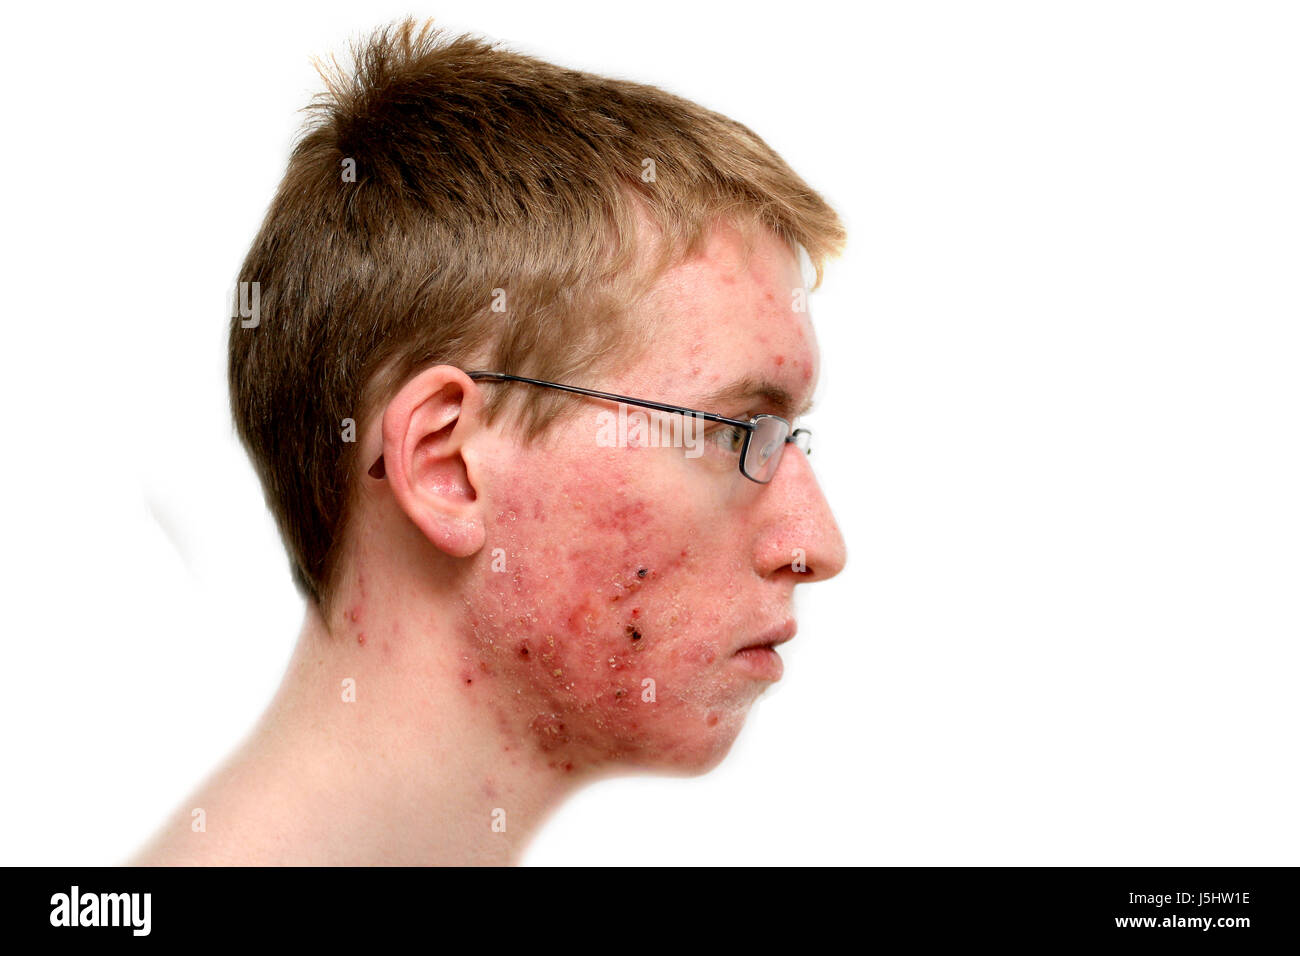 Problema di prurito brufolo acne malattia della pelle dermatologo stelo ragazzi adolescenti la gioventù Foto Stock